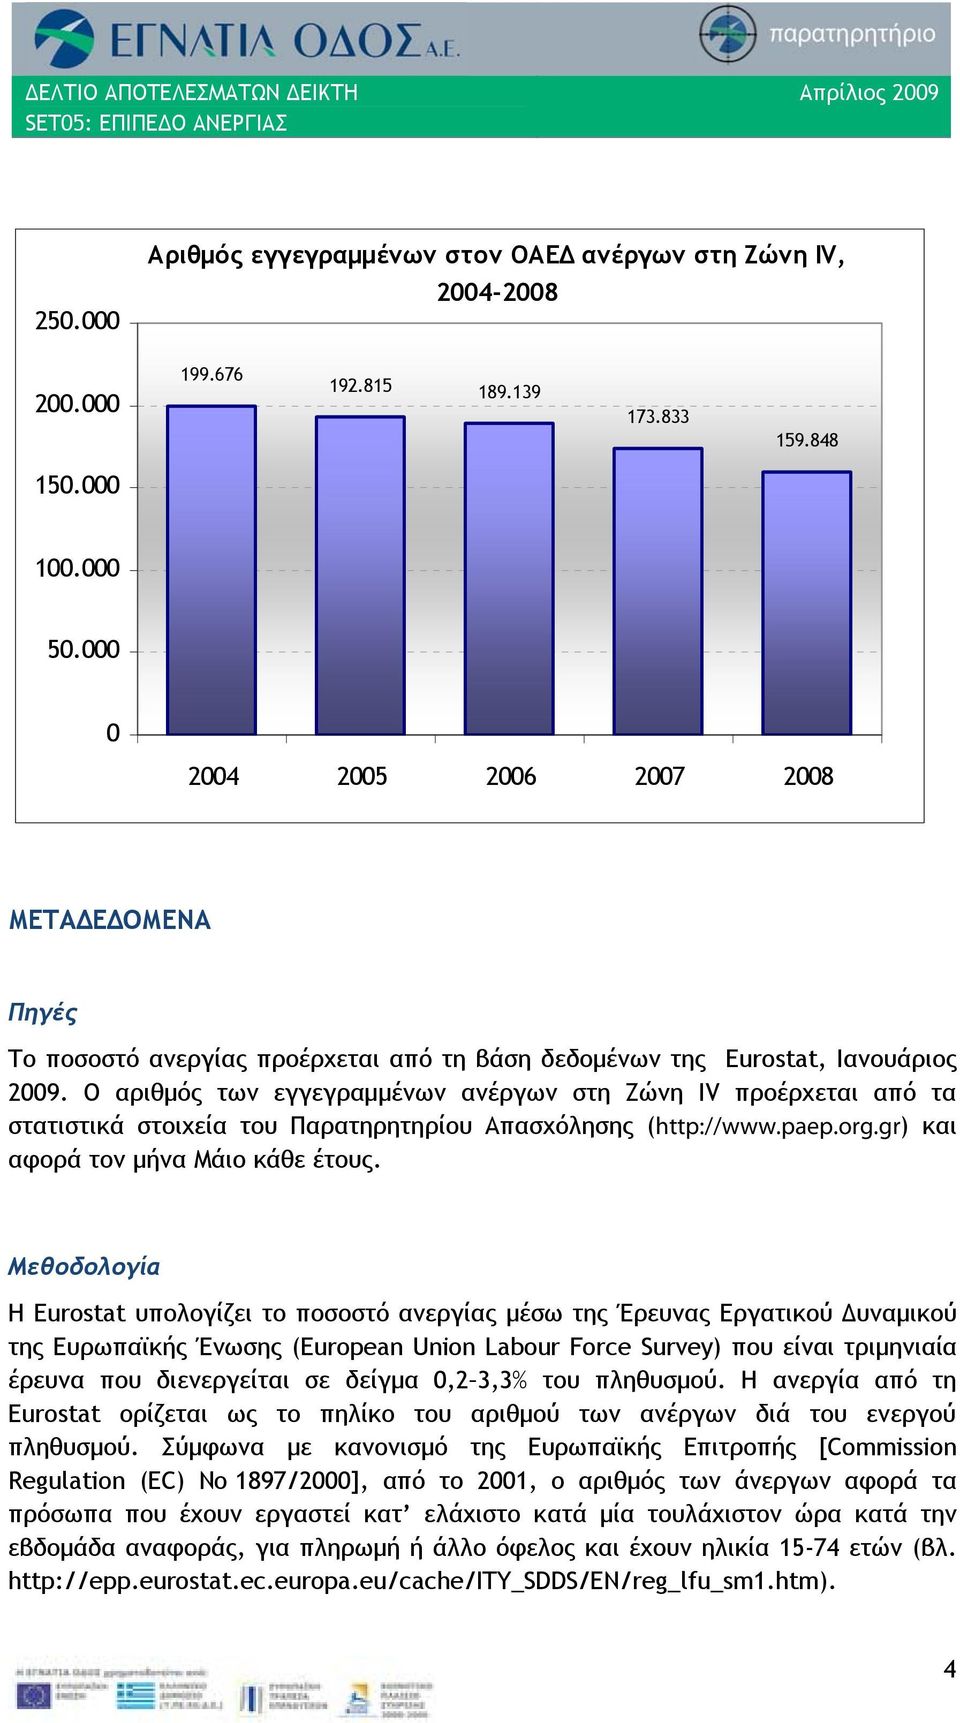 Ο αριθμός των εγγεγραμμένων ανέργων στη Ζώνη IV προέρχεται από τα στατιστικά στοιχεία του Παρατηρητηρίου Απασχόλησης (http://www.paep.org.gr) και αφορά τον μήνα Μάιο κάθε έτους.